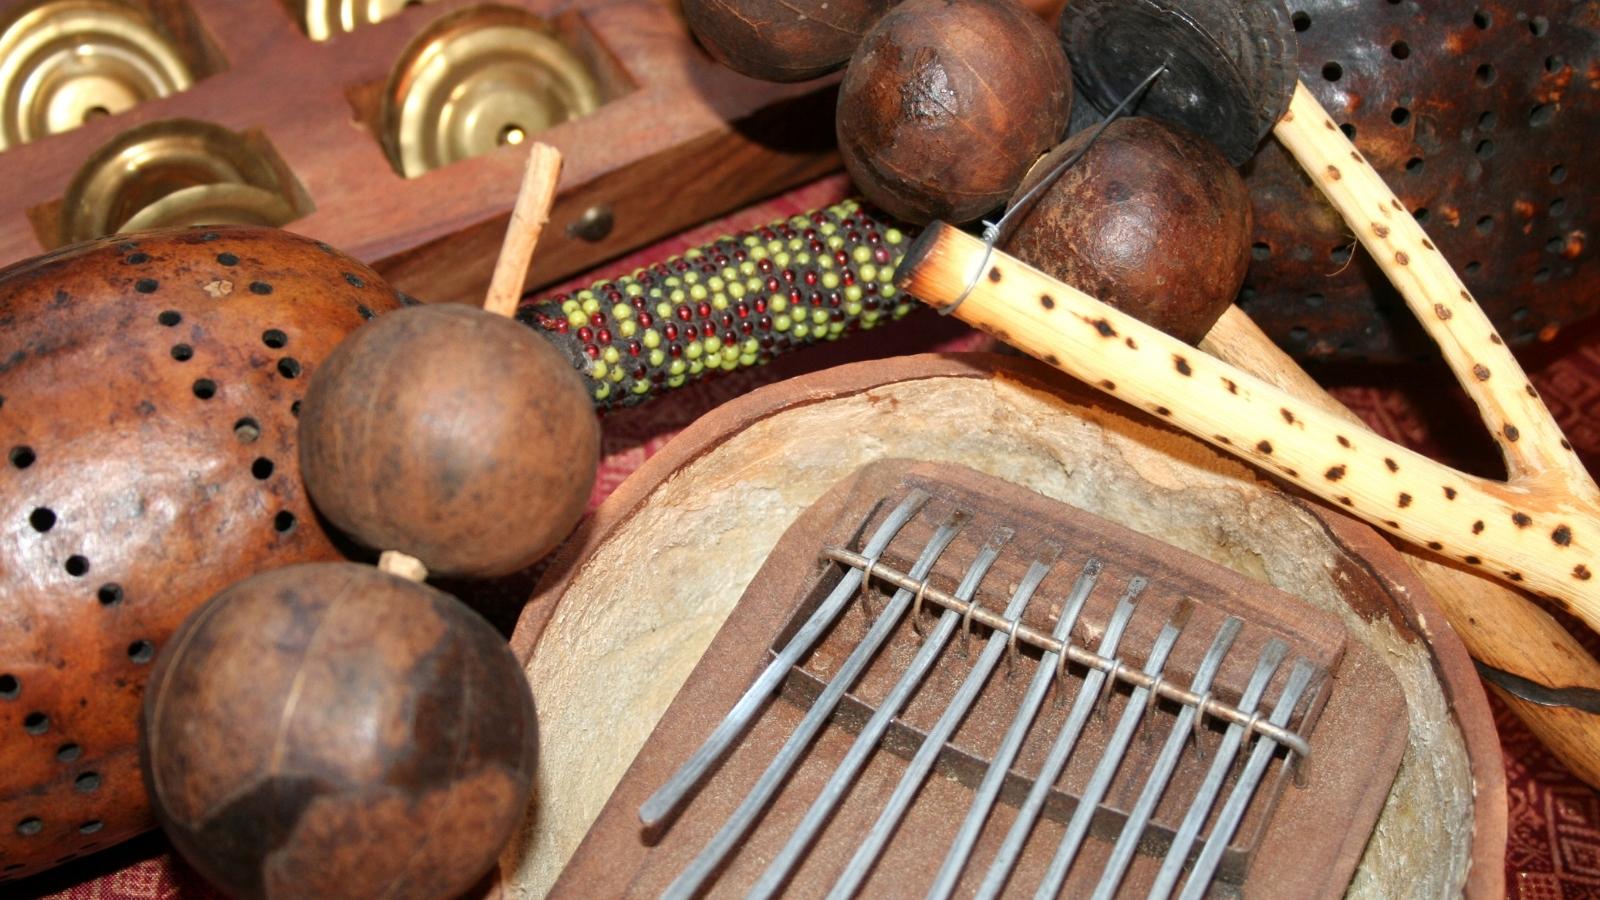 Symbolique instruments de musique